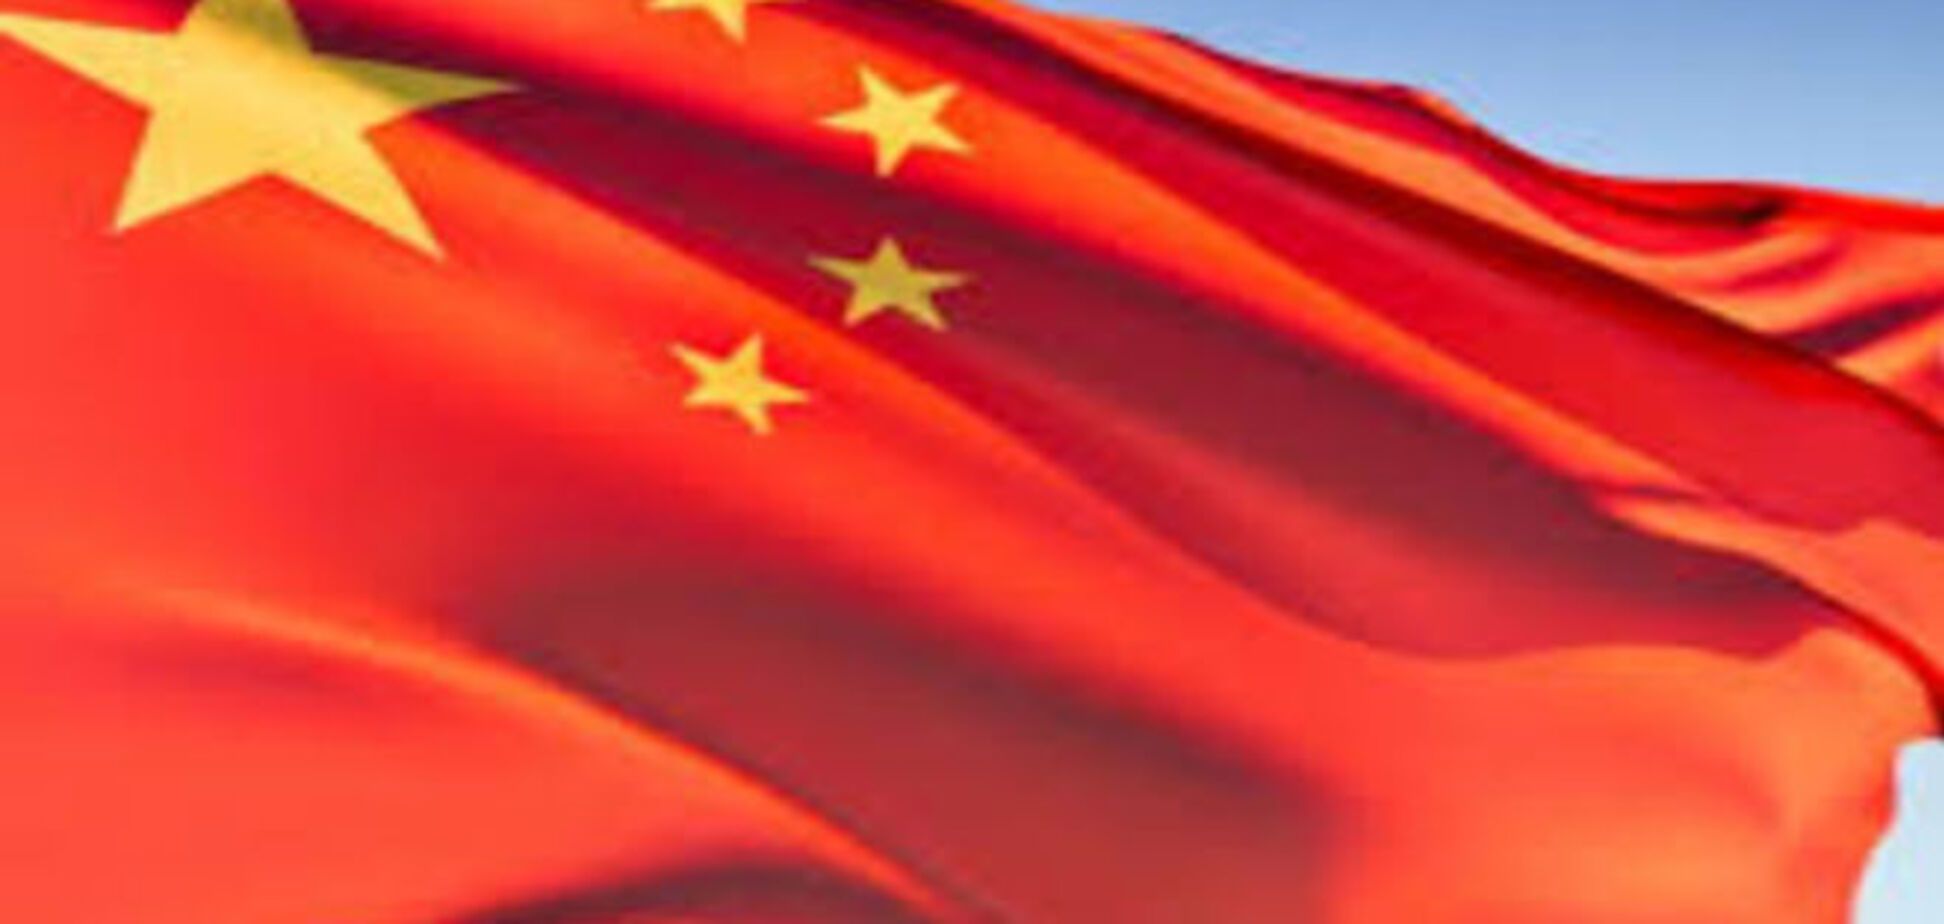 Обвал рынка - не предел! Возникла новая угроза усиления кризиса в Китае